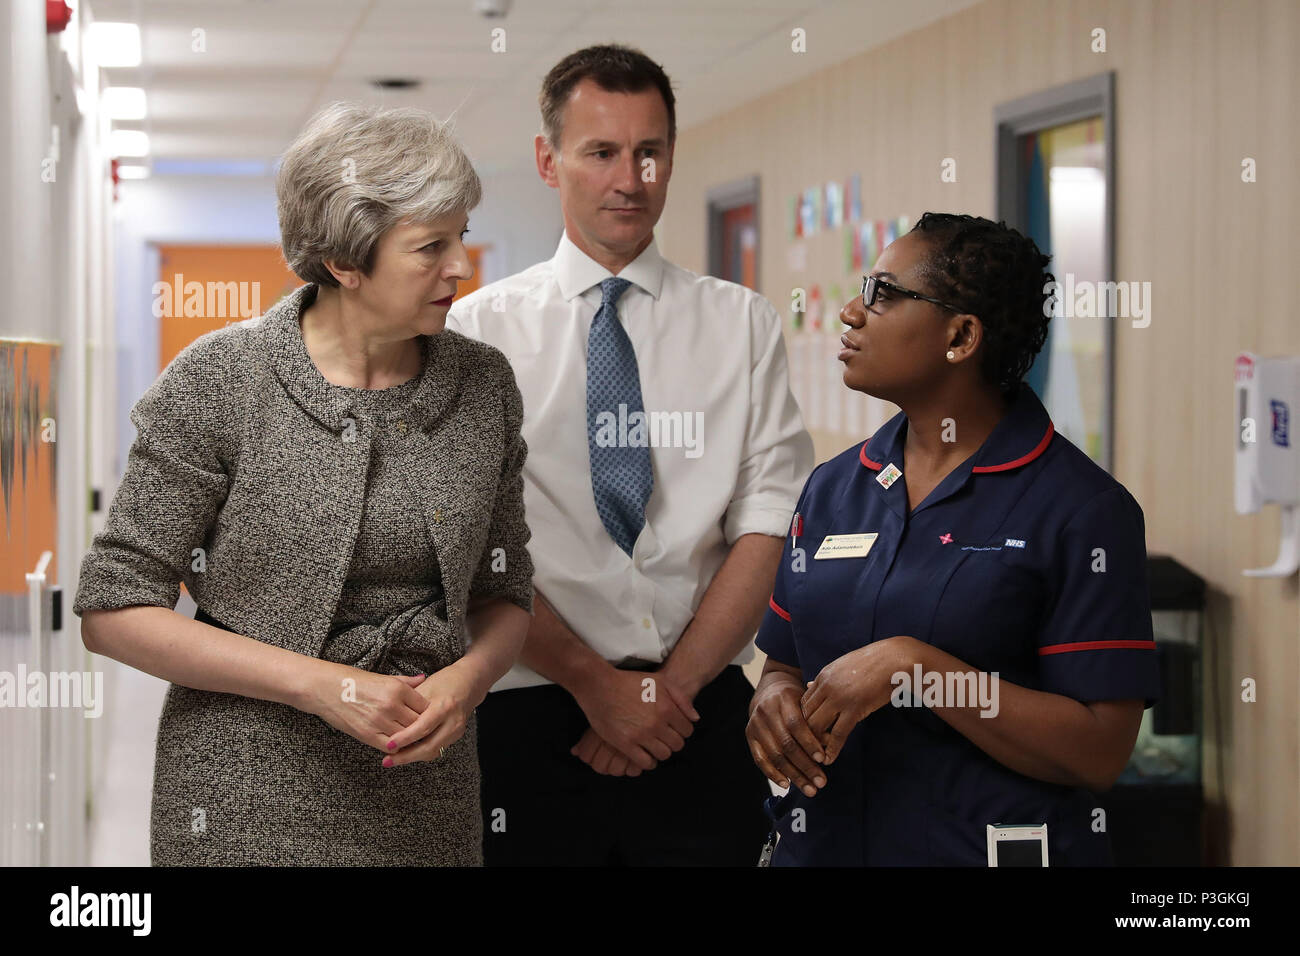 Premierminister Theresa May und der Staatssekretär für Gesundheit und Soziales Jeremy Hunt Krankenschwestern während einer Tour von der Royal Free Hospital treffen, nördlich von London nach der Bekanntgabe der erhöhten Nhs Finanzierung. Stockfoto